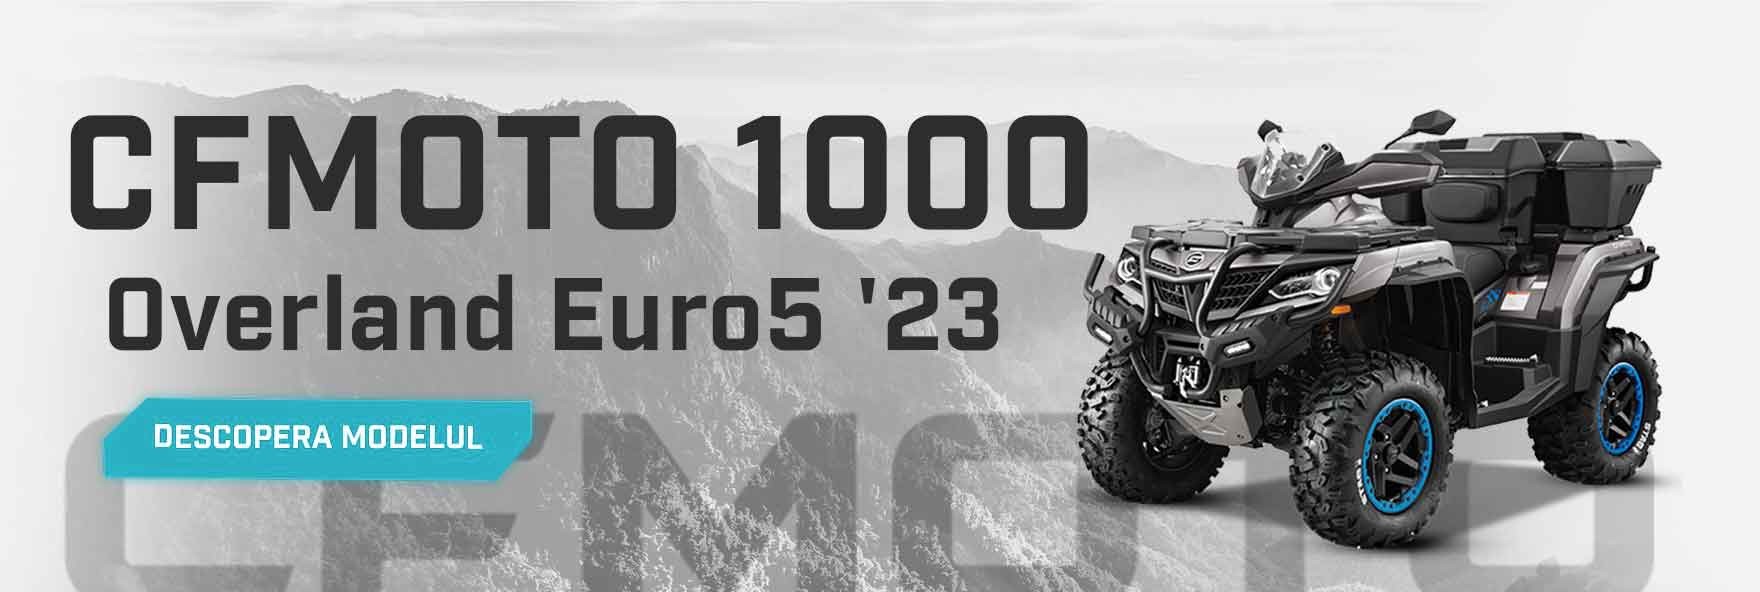 CFMOTO CFORCE 1000 OVERLAND EPS Euro5 '23